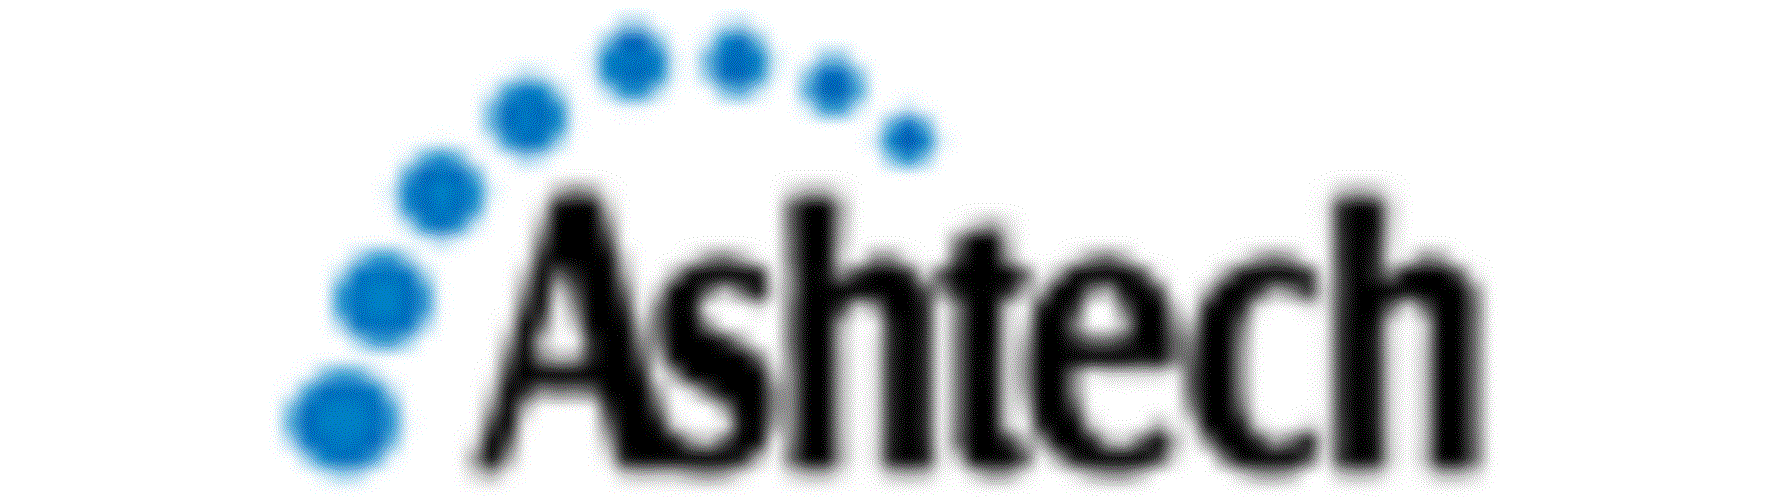 Ashtech